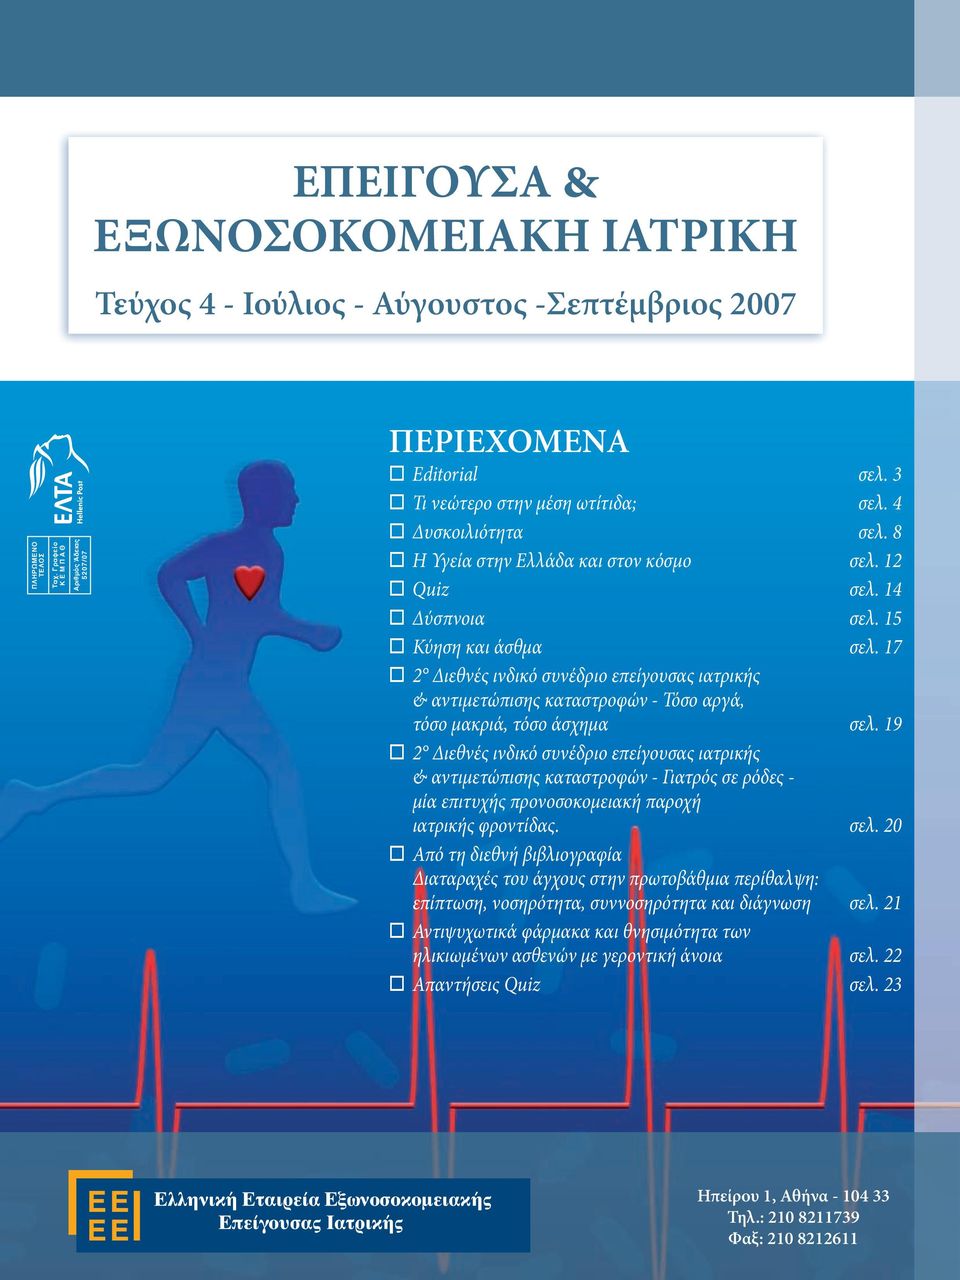 8 Η Υγεία στην Ελλάδα και στον κόσμο σελ. 12 Quiz σελ. 14 Δύσπνοια σελ. 15 Κύηση και άσθμα σελ.